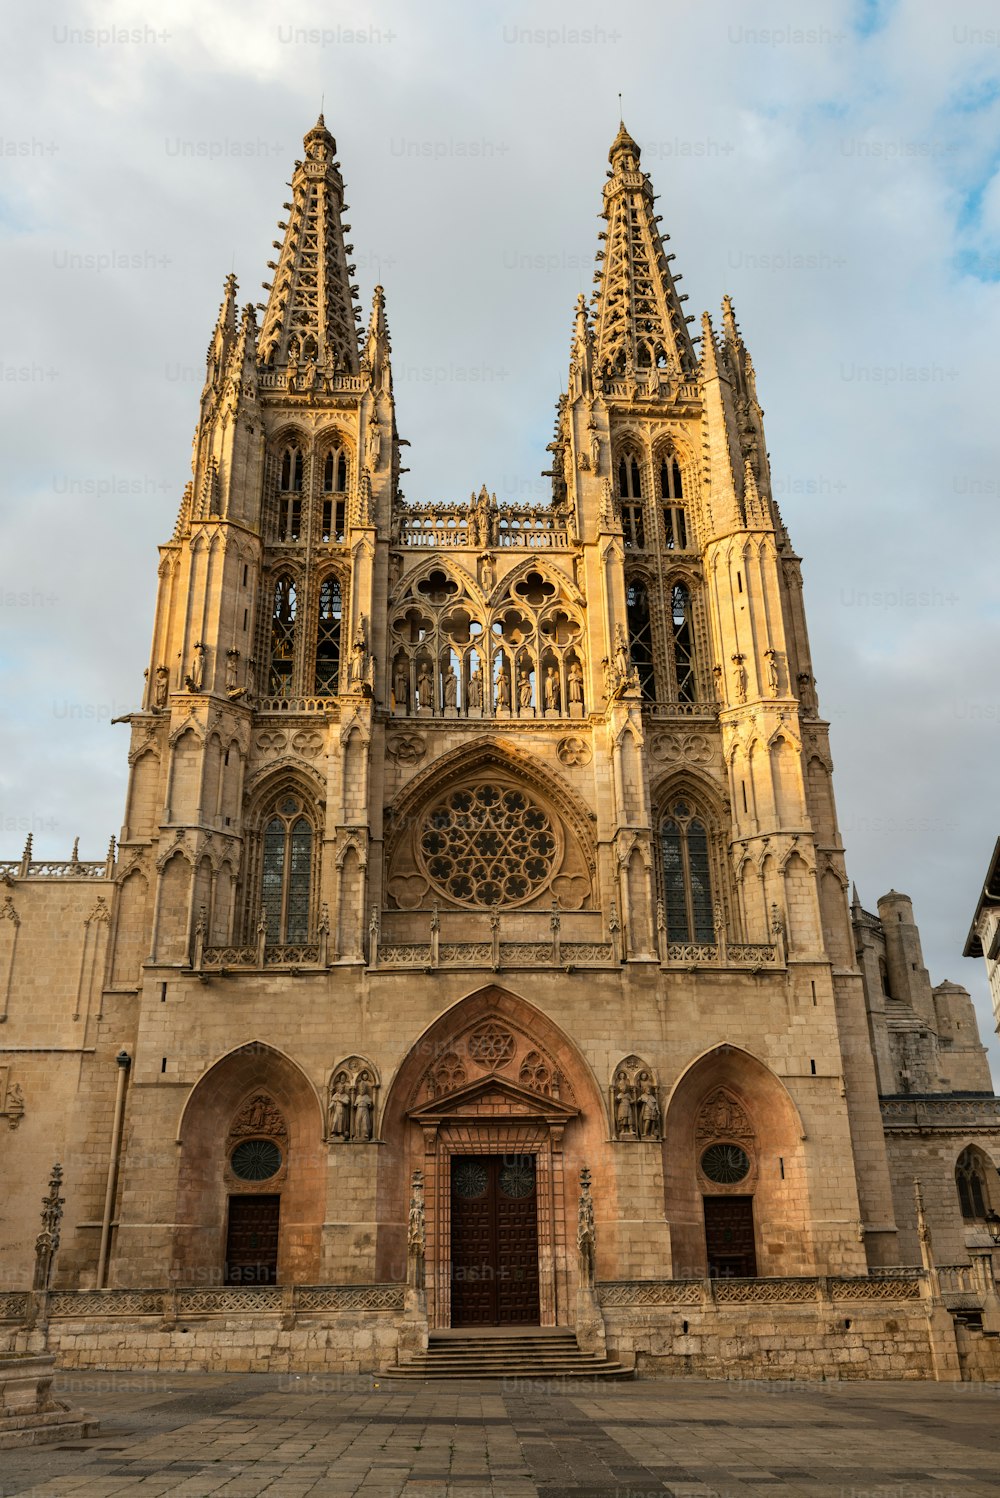 Vue latérale des deux flèches flamboyantes occidentales de la cathédrale catholique romaine gothique de Burgos (1221-1567) illuminées par le soleil couchant, Espagne.